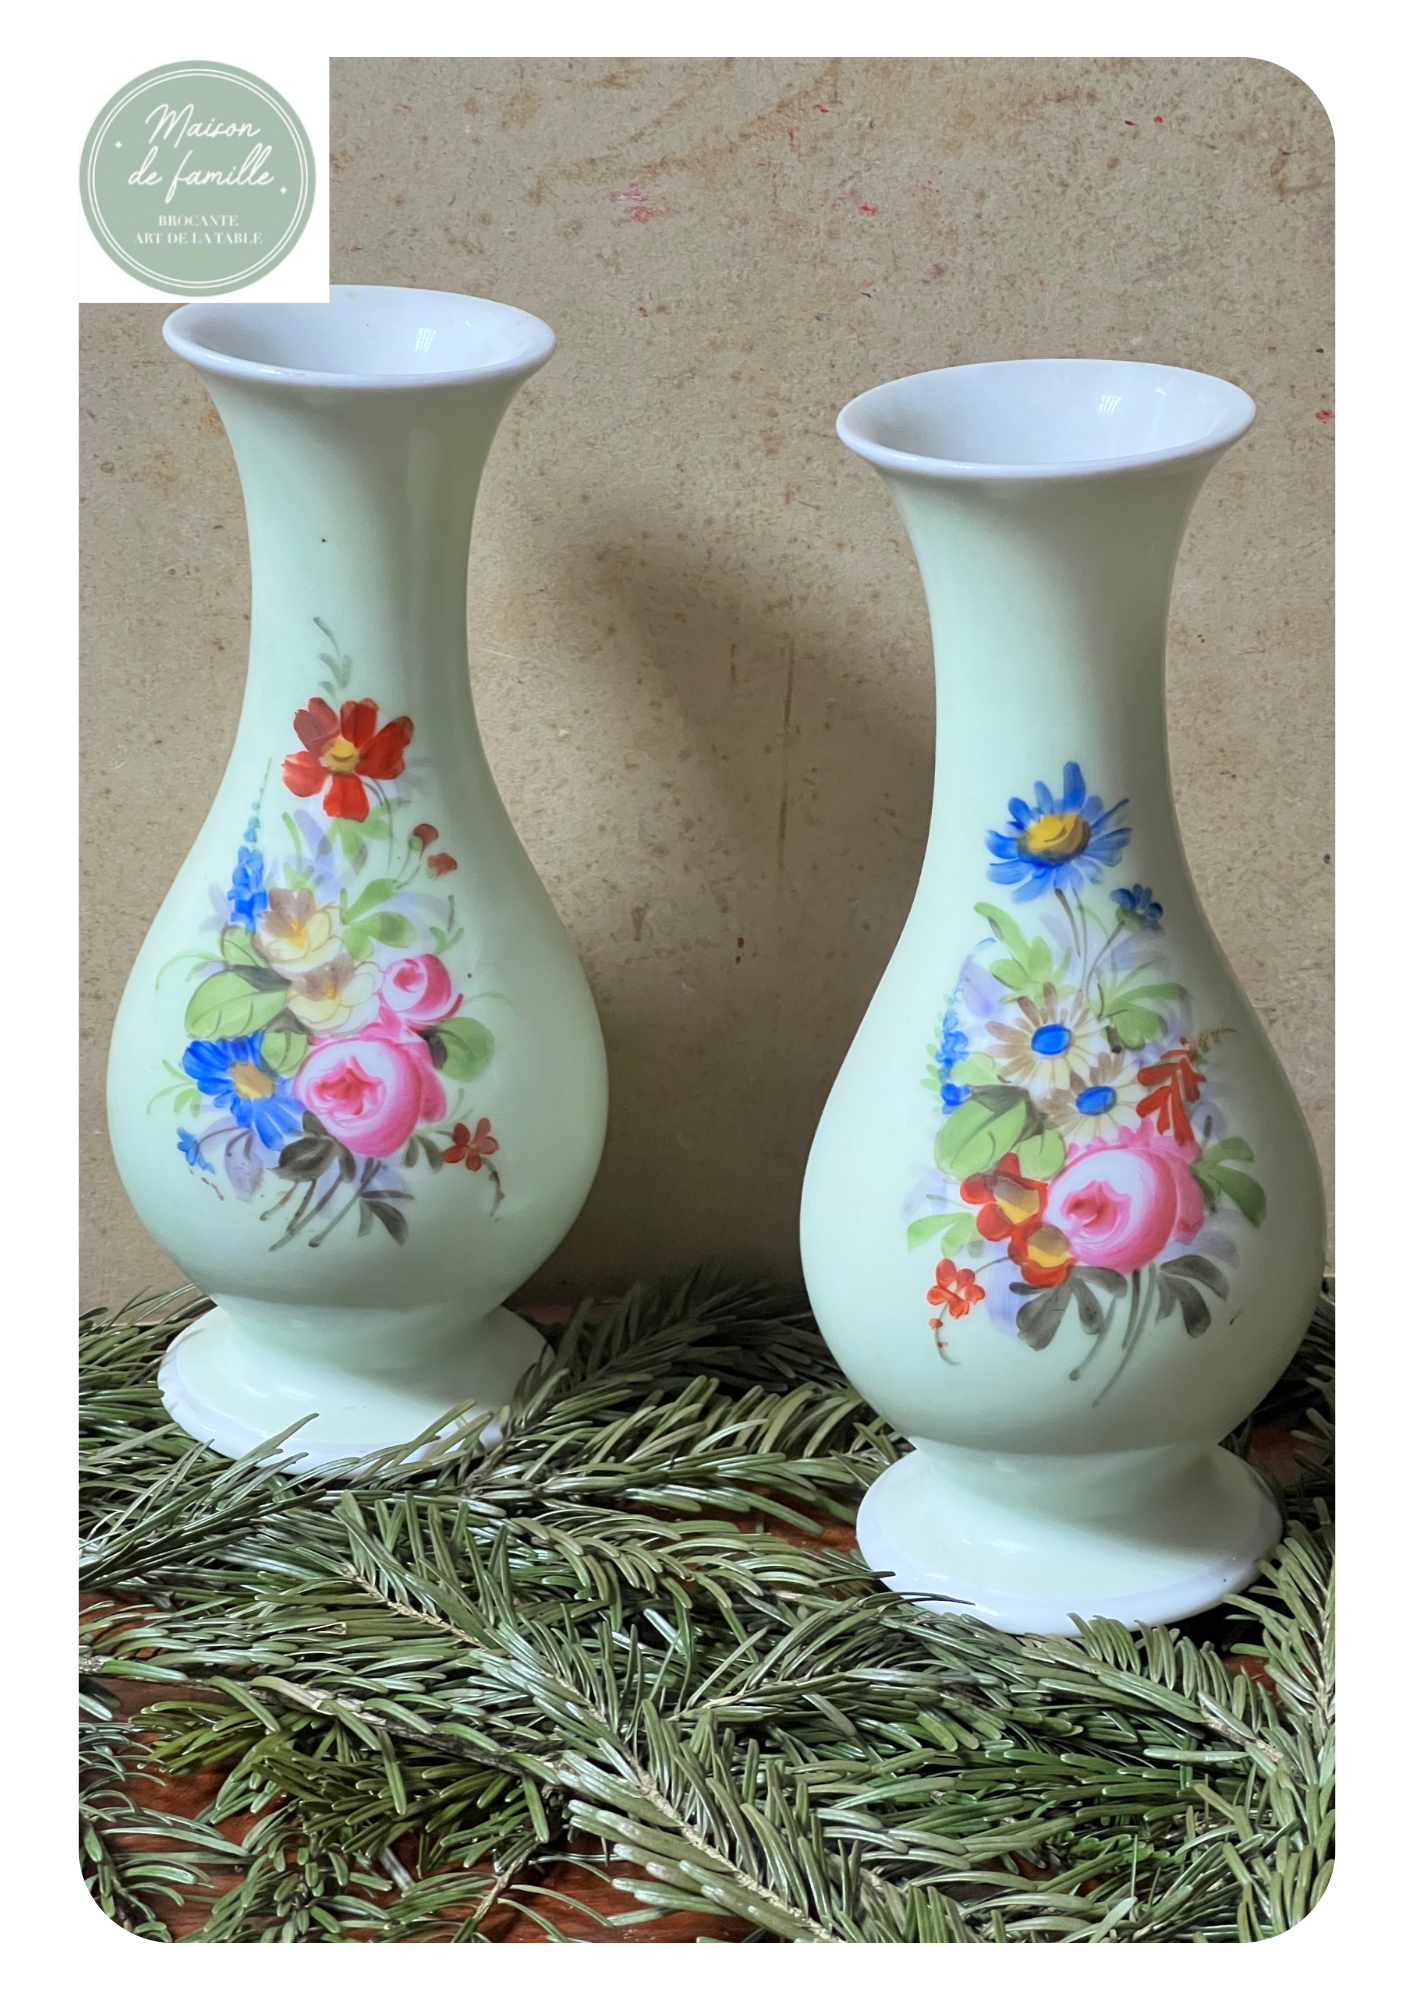 Pimprenelle2caps - Boutique de décoration - Coup de 🖤 Les vases sable blanc  🌞 disponibles à la boutique Pimprenelle 📍 Quel est votre vase préféré sur  cette photo ?